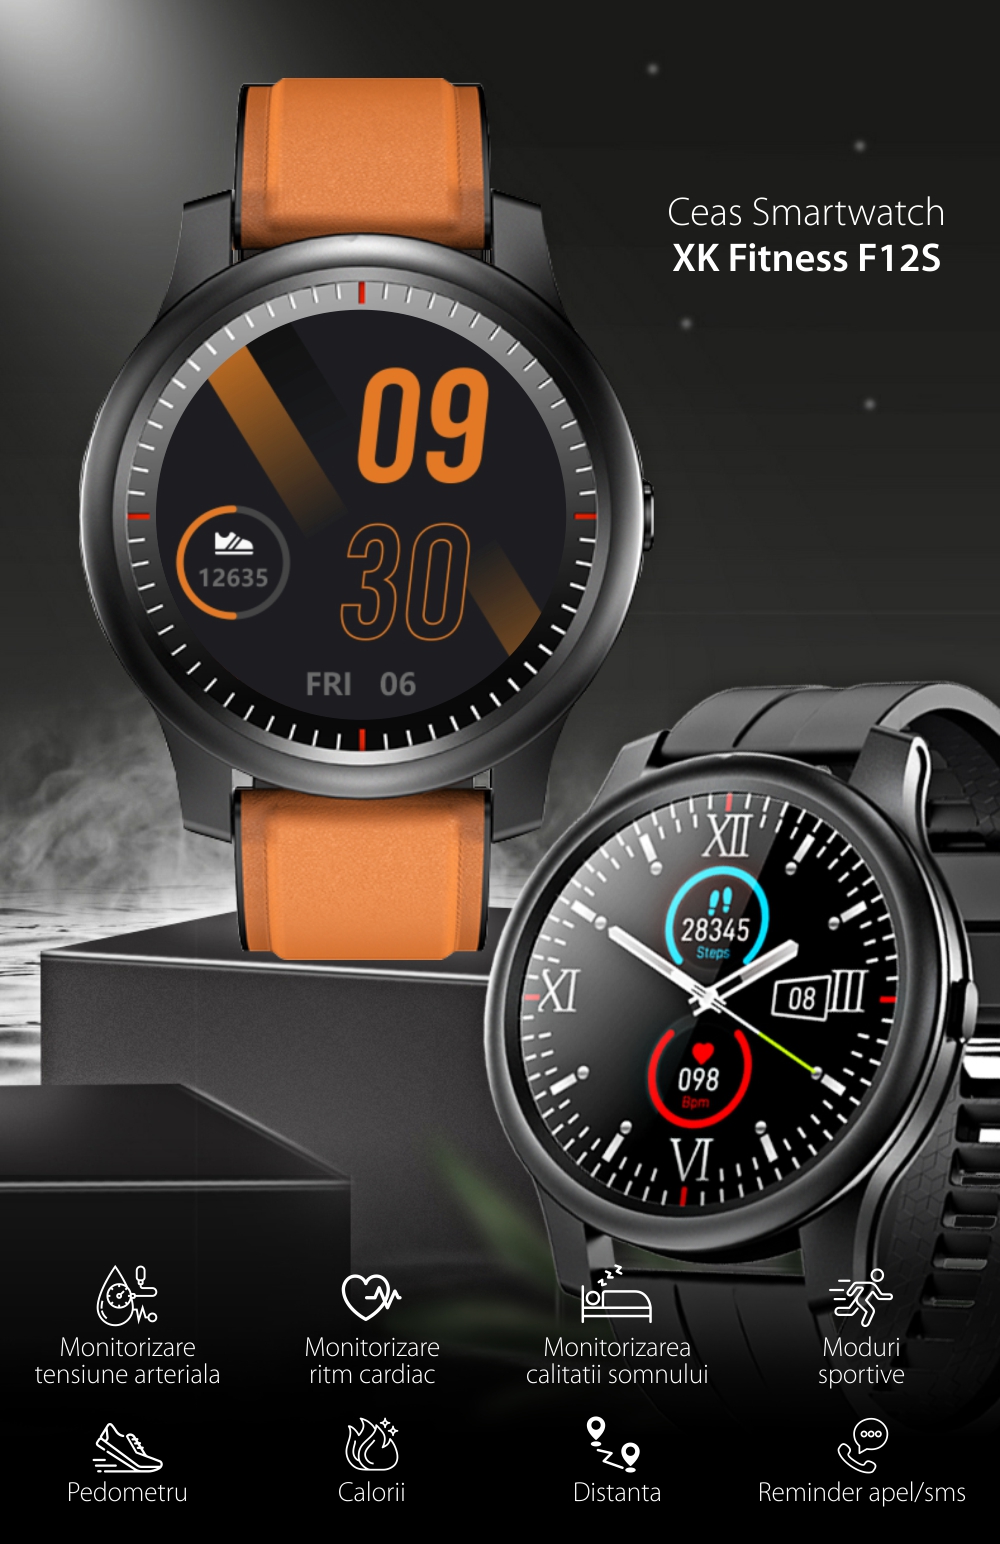 Ceas Smartwatch XK Fitness F12S cu Monitorizare Puls, Tensiune, Oxigen, Somn, Memento sedentar, Moduri sportive, Calorii, Negru